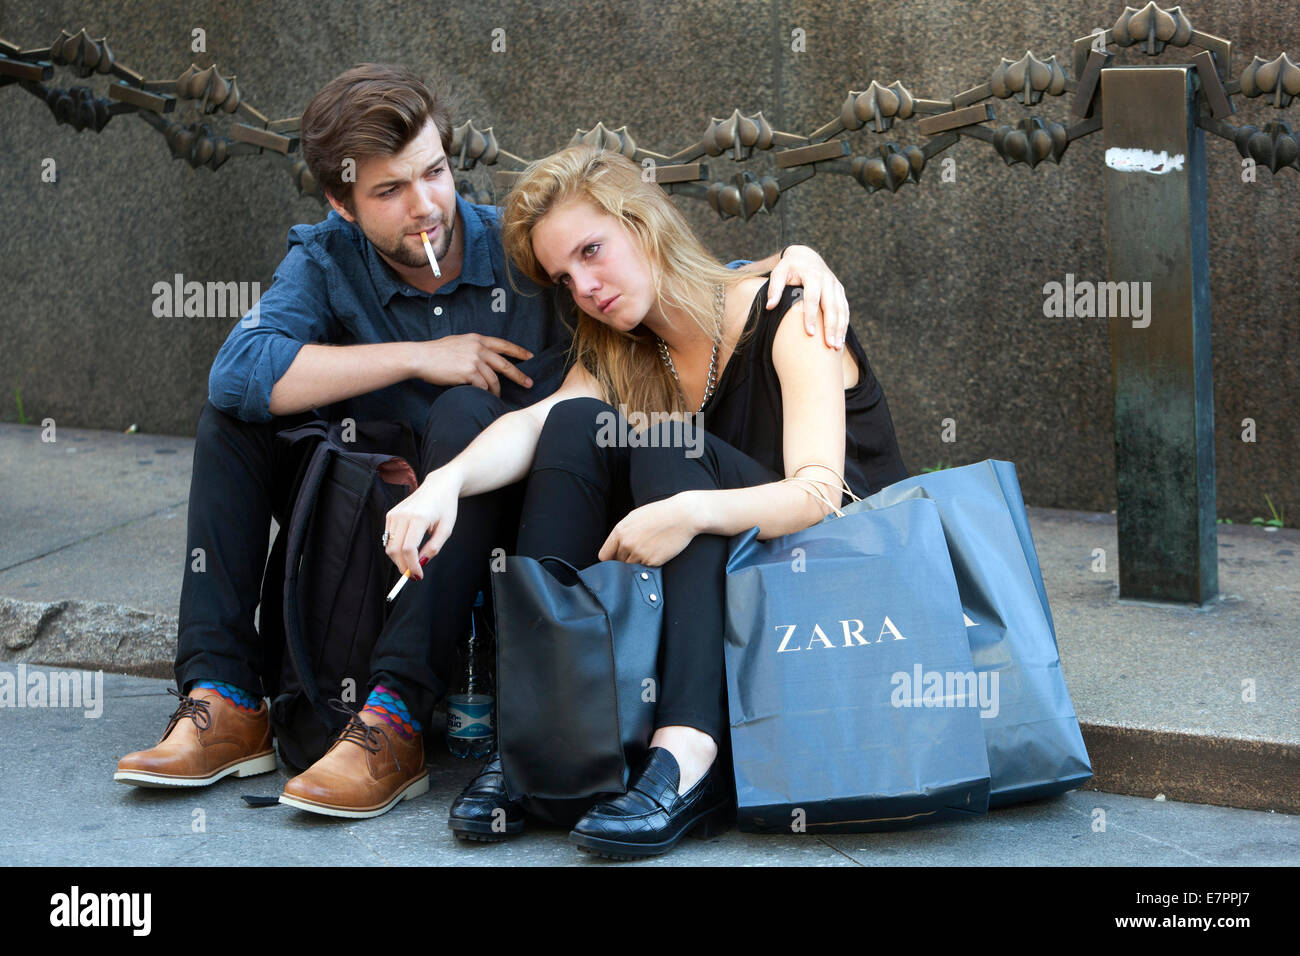 Prager Einkaufspaar, der sich nach dem Einkaufen unter dem Denkmal der St. ausruht Wenzel, Prag Tschechische Republik Leute Zara Papier Einkaufstaschen junge Frau traurig Stockfoto